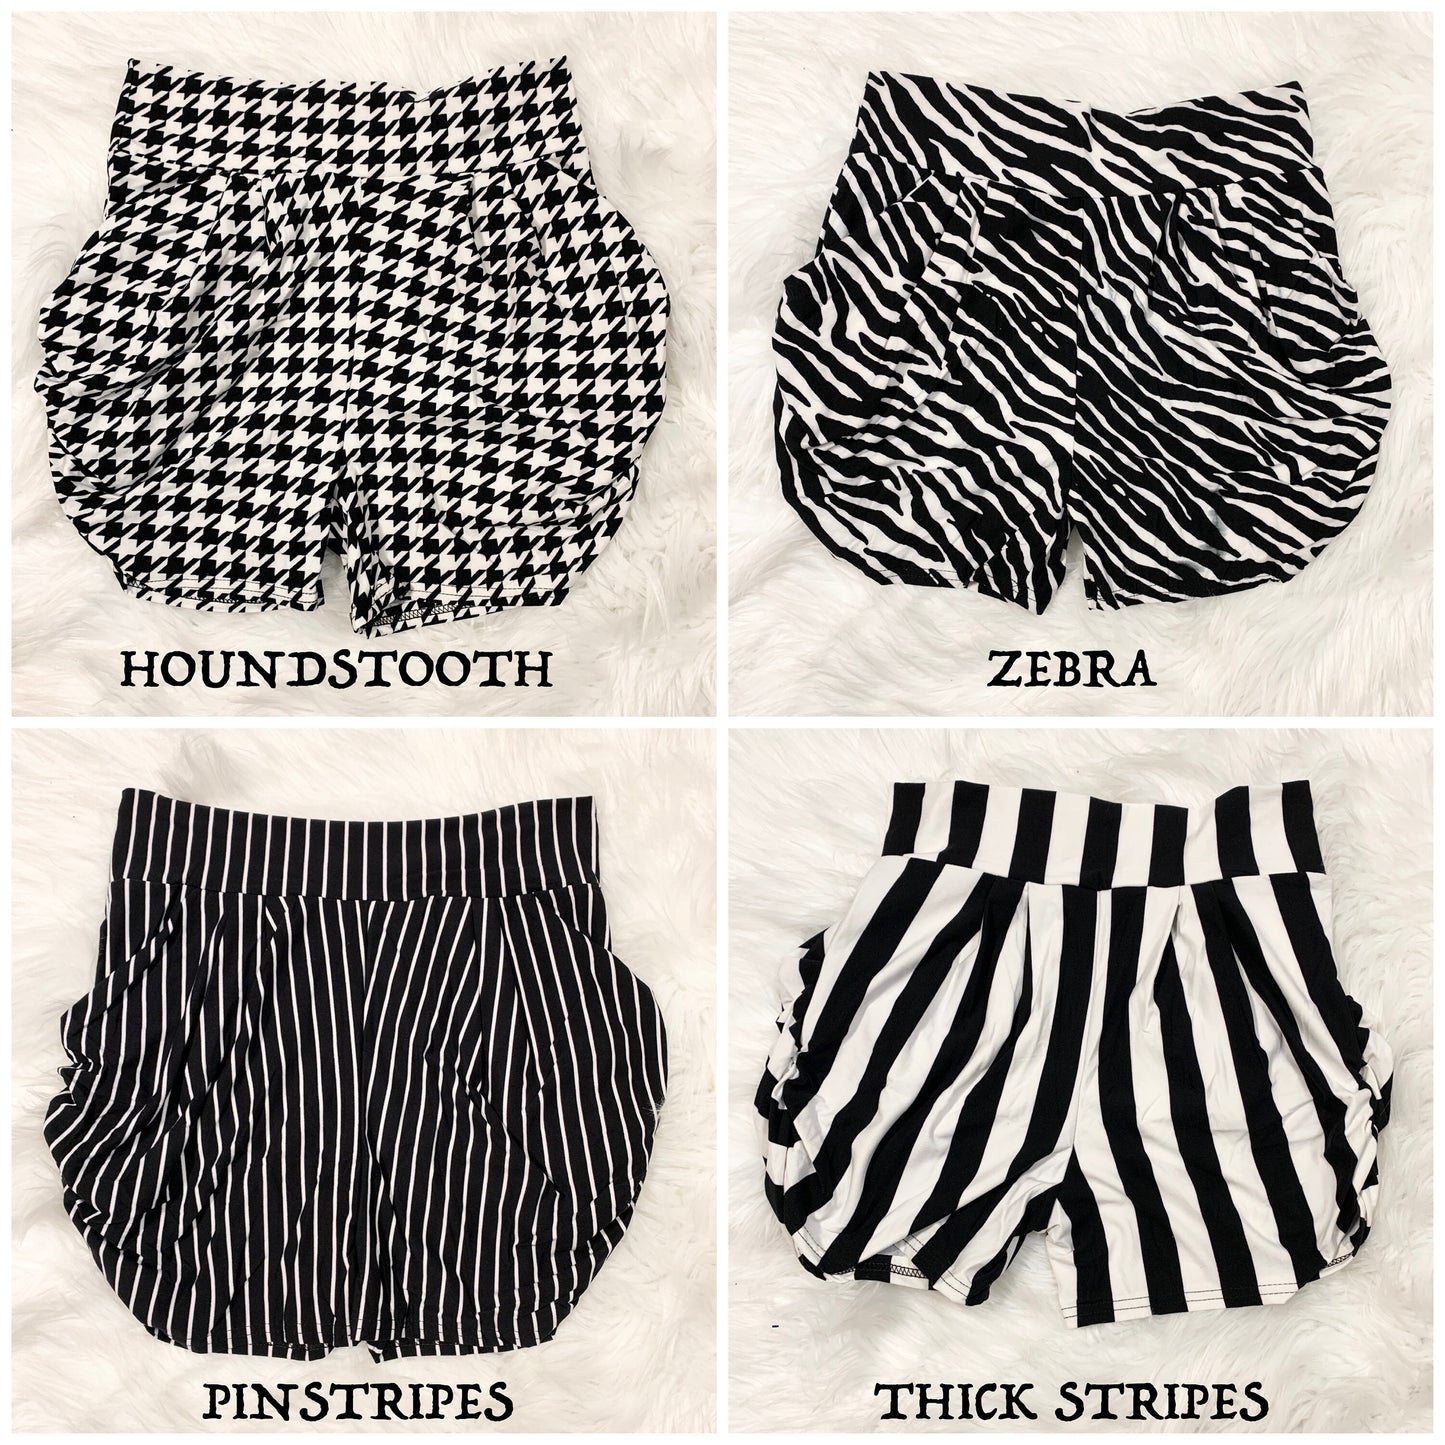 Premium Soft Harem Print Shorts with Pockets, Soft Print Harem Shorts, Summer Shorts